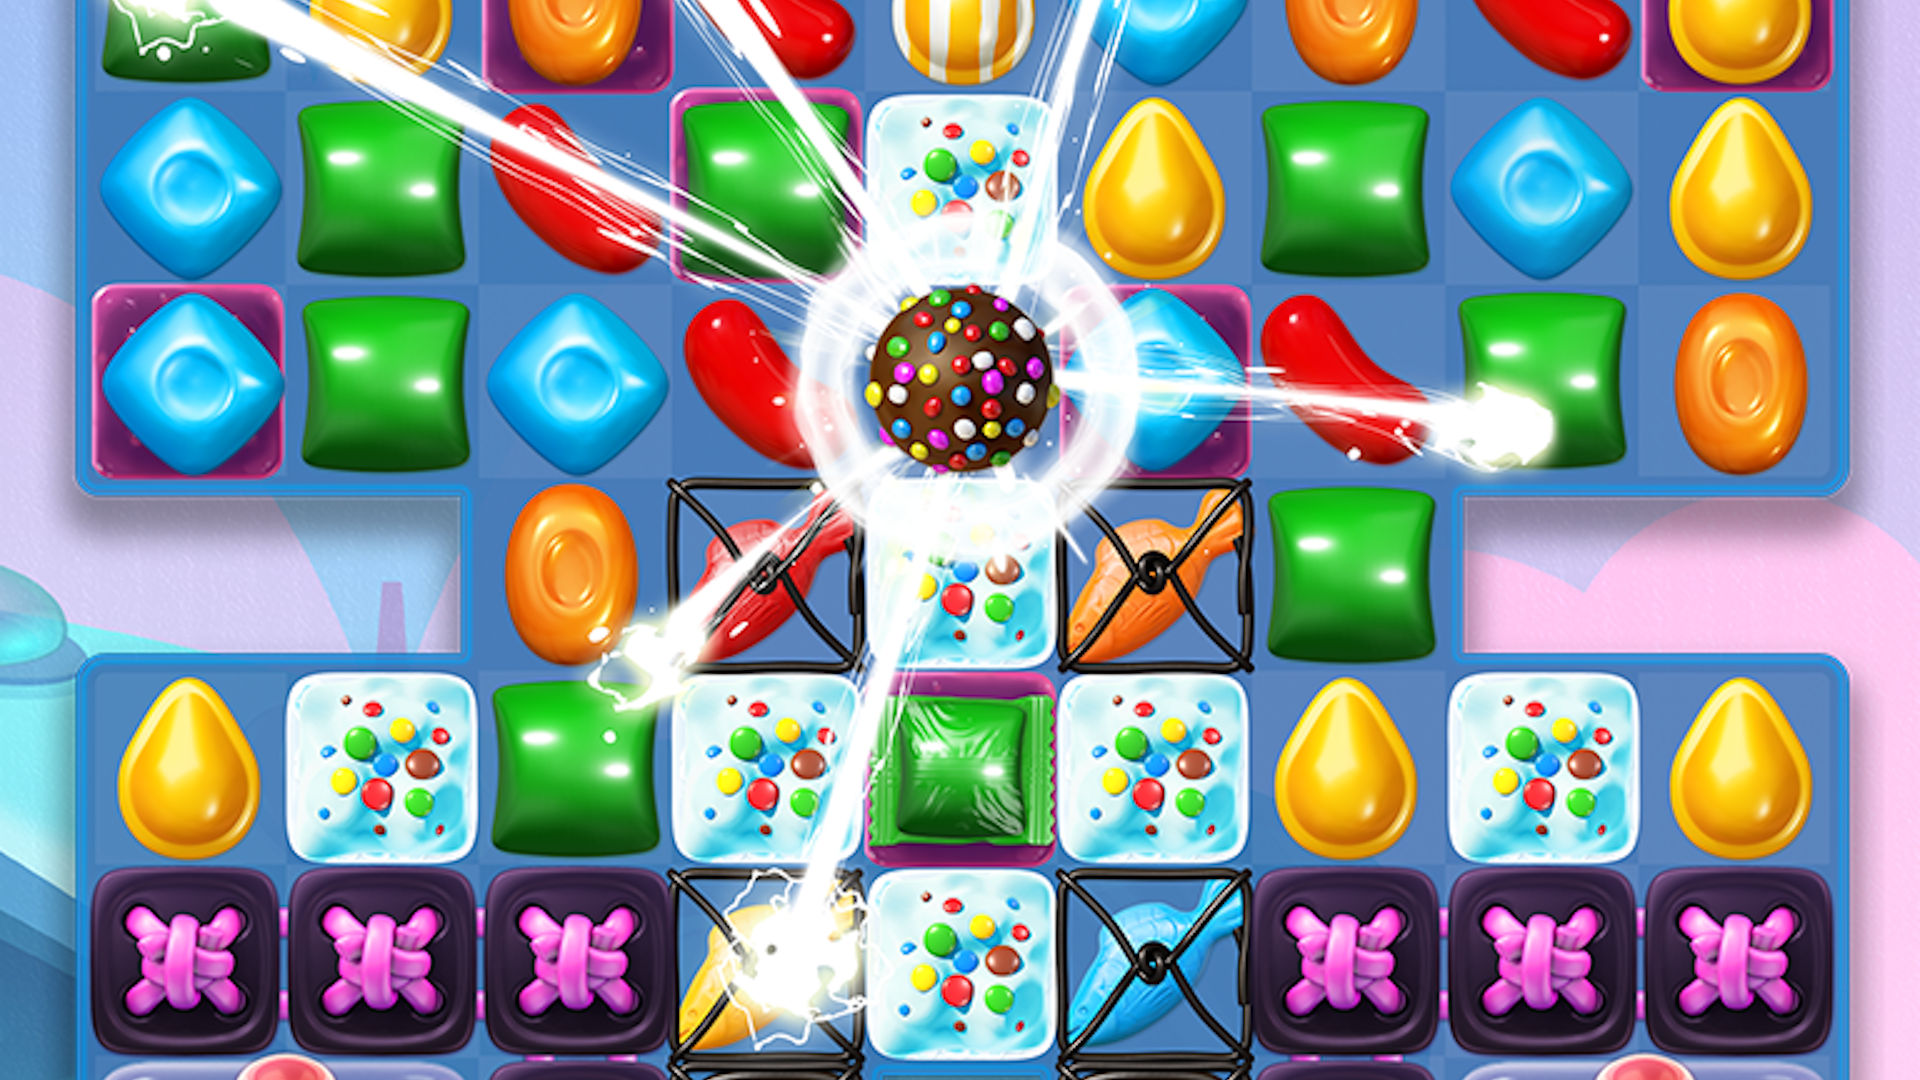 Ən yaxşı mobil puzzle oyunlar: Candy Crush Soda Saga. Şəkil müxtəlif konfet plitələrini göstərir